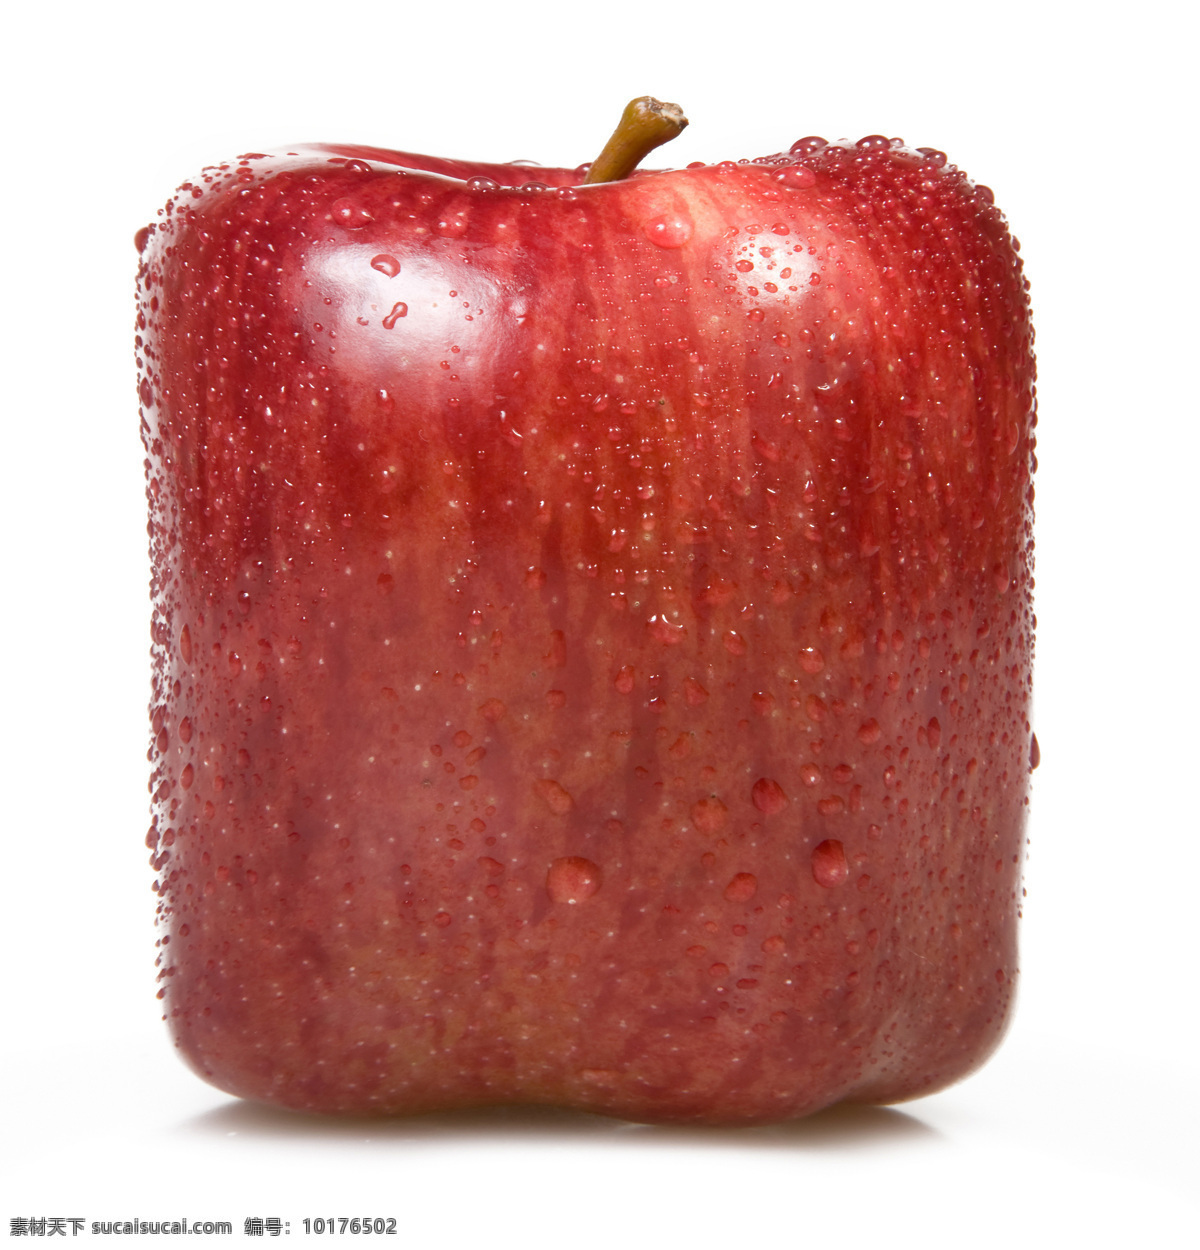 创意方形苹果 方形苹果 苹果 苹果素材 苹果摄影 水果 水果素材 水果背景 创意水果 生活百科 摄影图库 水果蔬菜 餐饮美食 白色